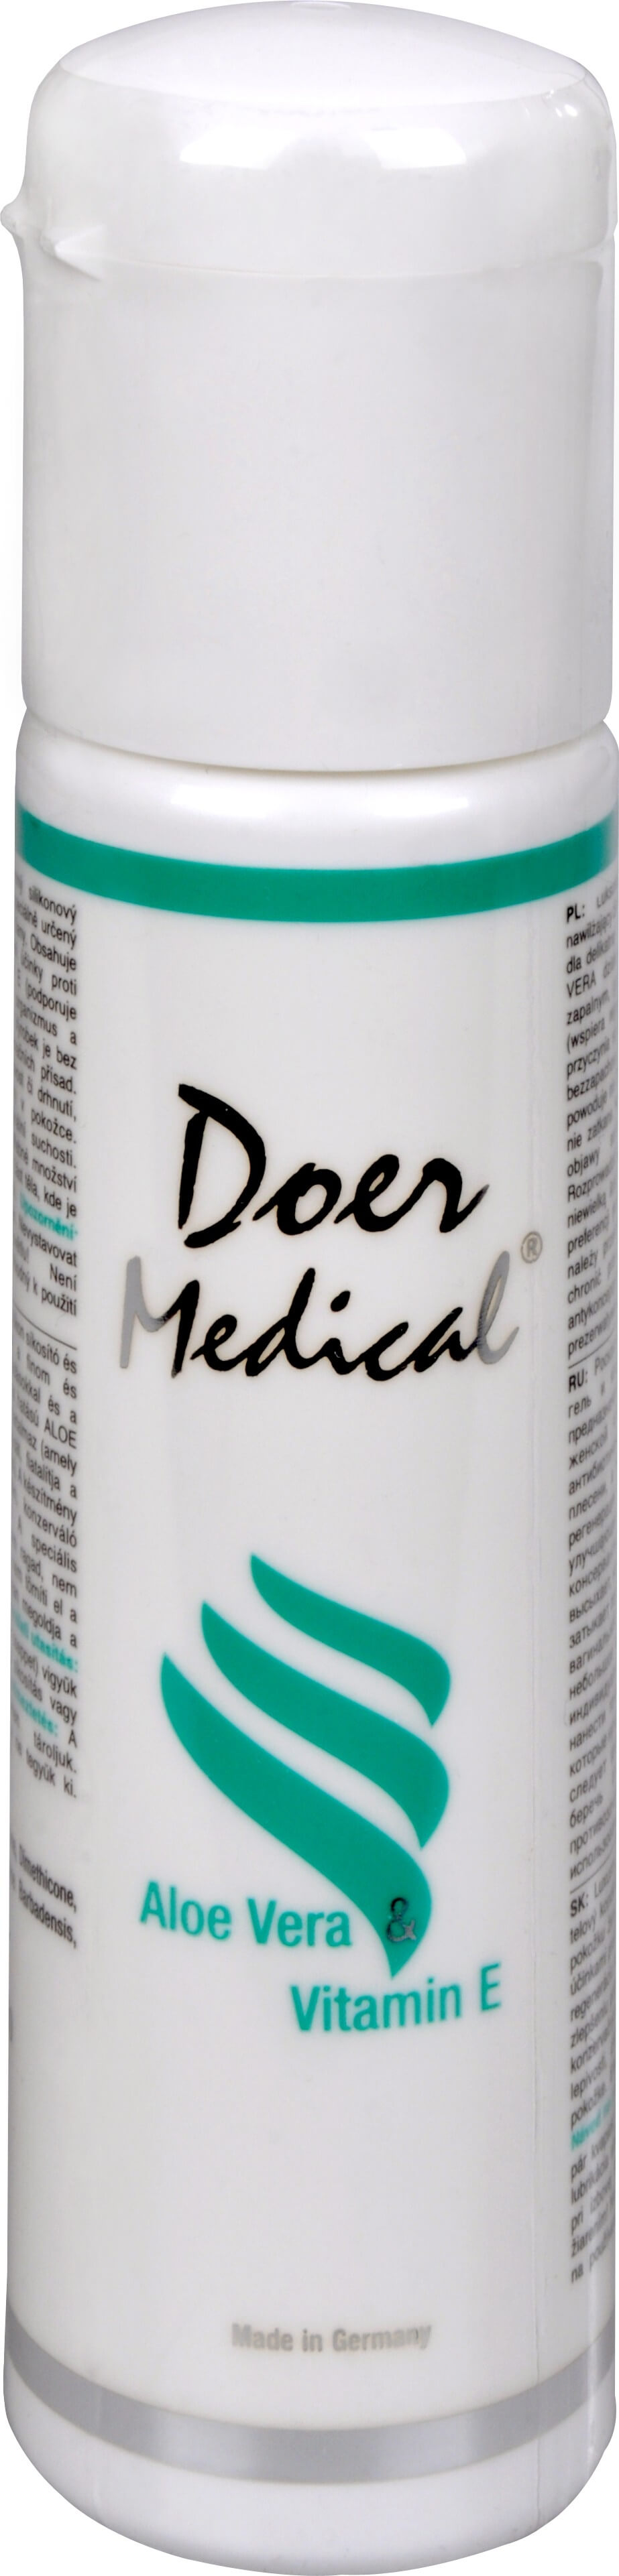 Zobrazit detail výrobku Doer Medical® Doer Medical Aloe vera & vitamín E 100 ml + 2 měsíce na vrácení zboží